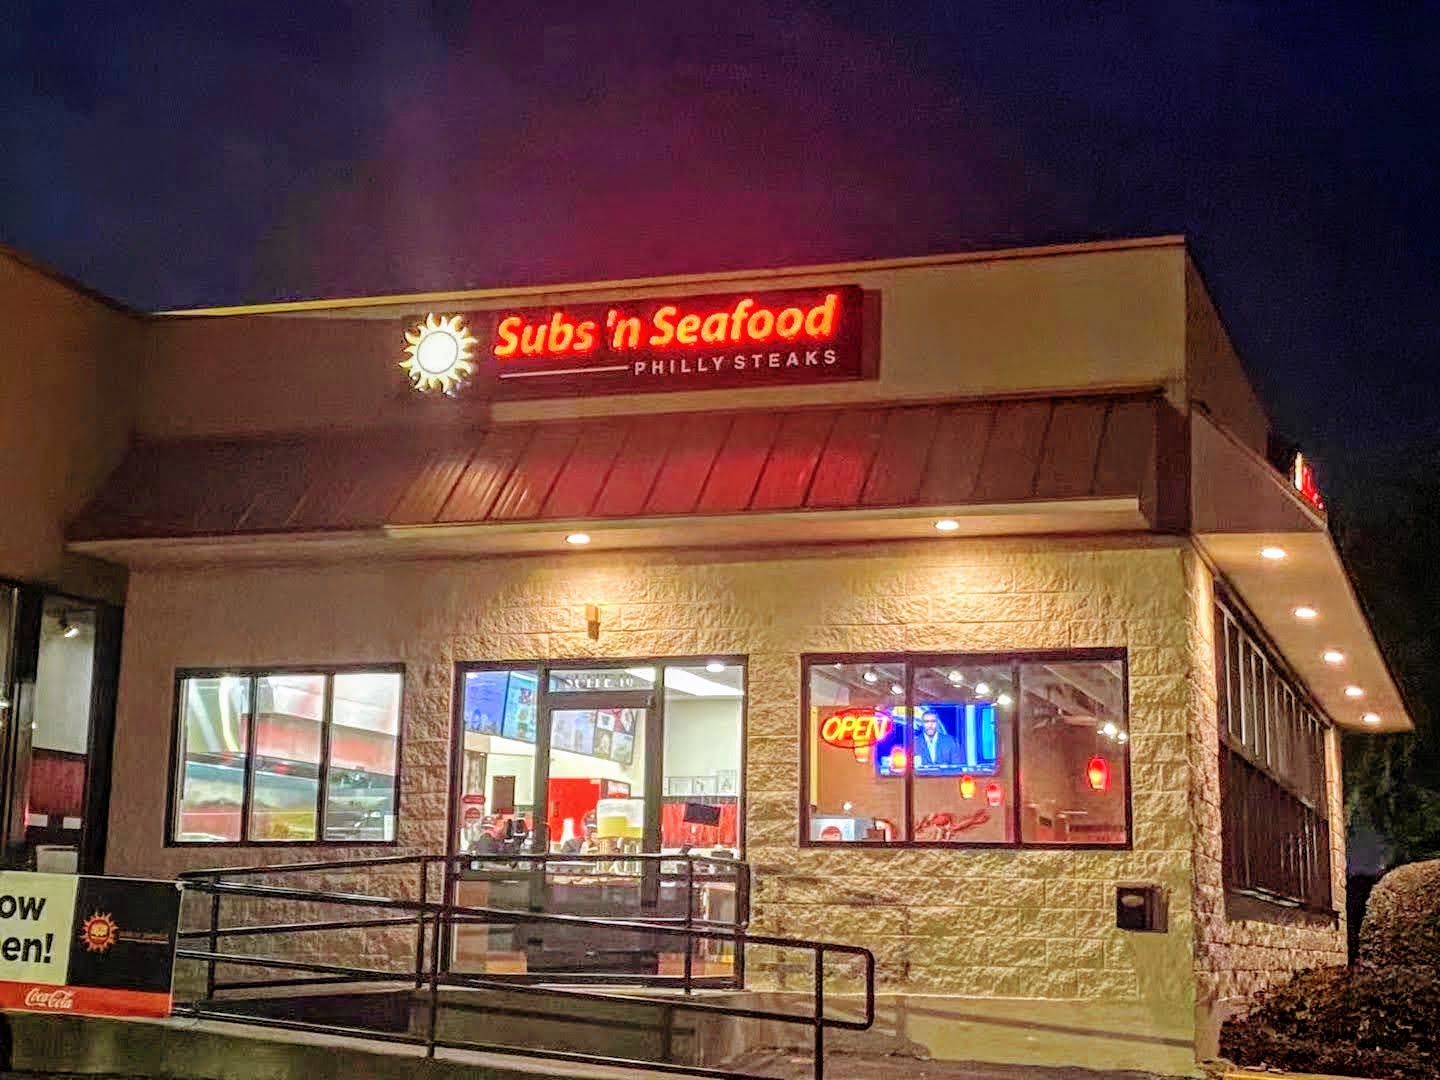 K & J Subs and Seafood